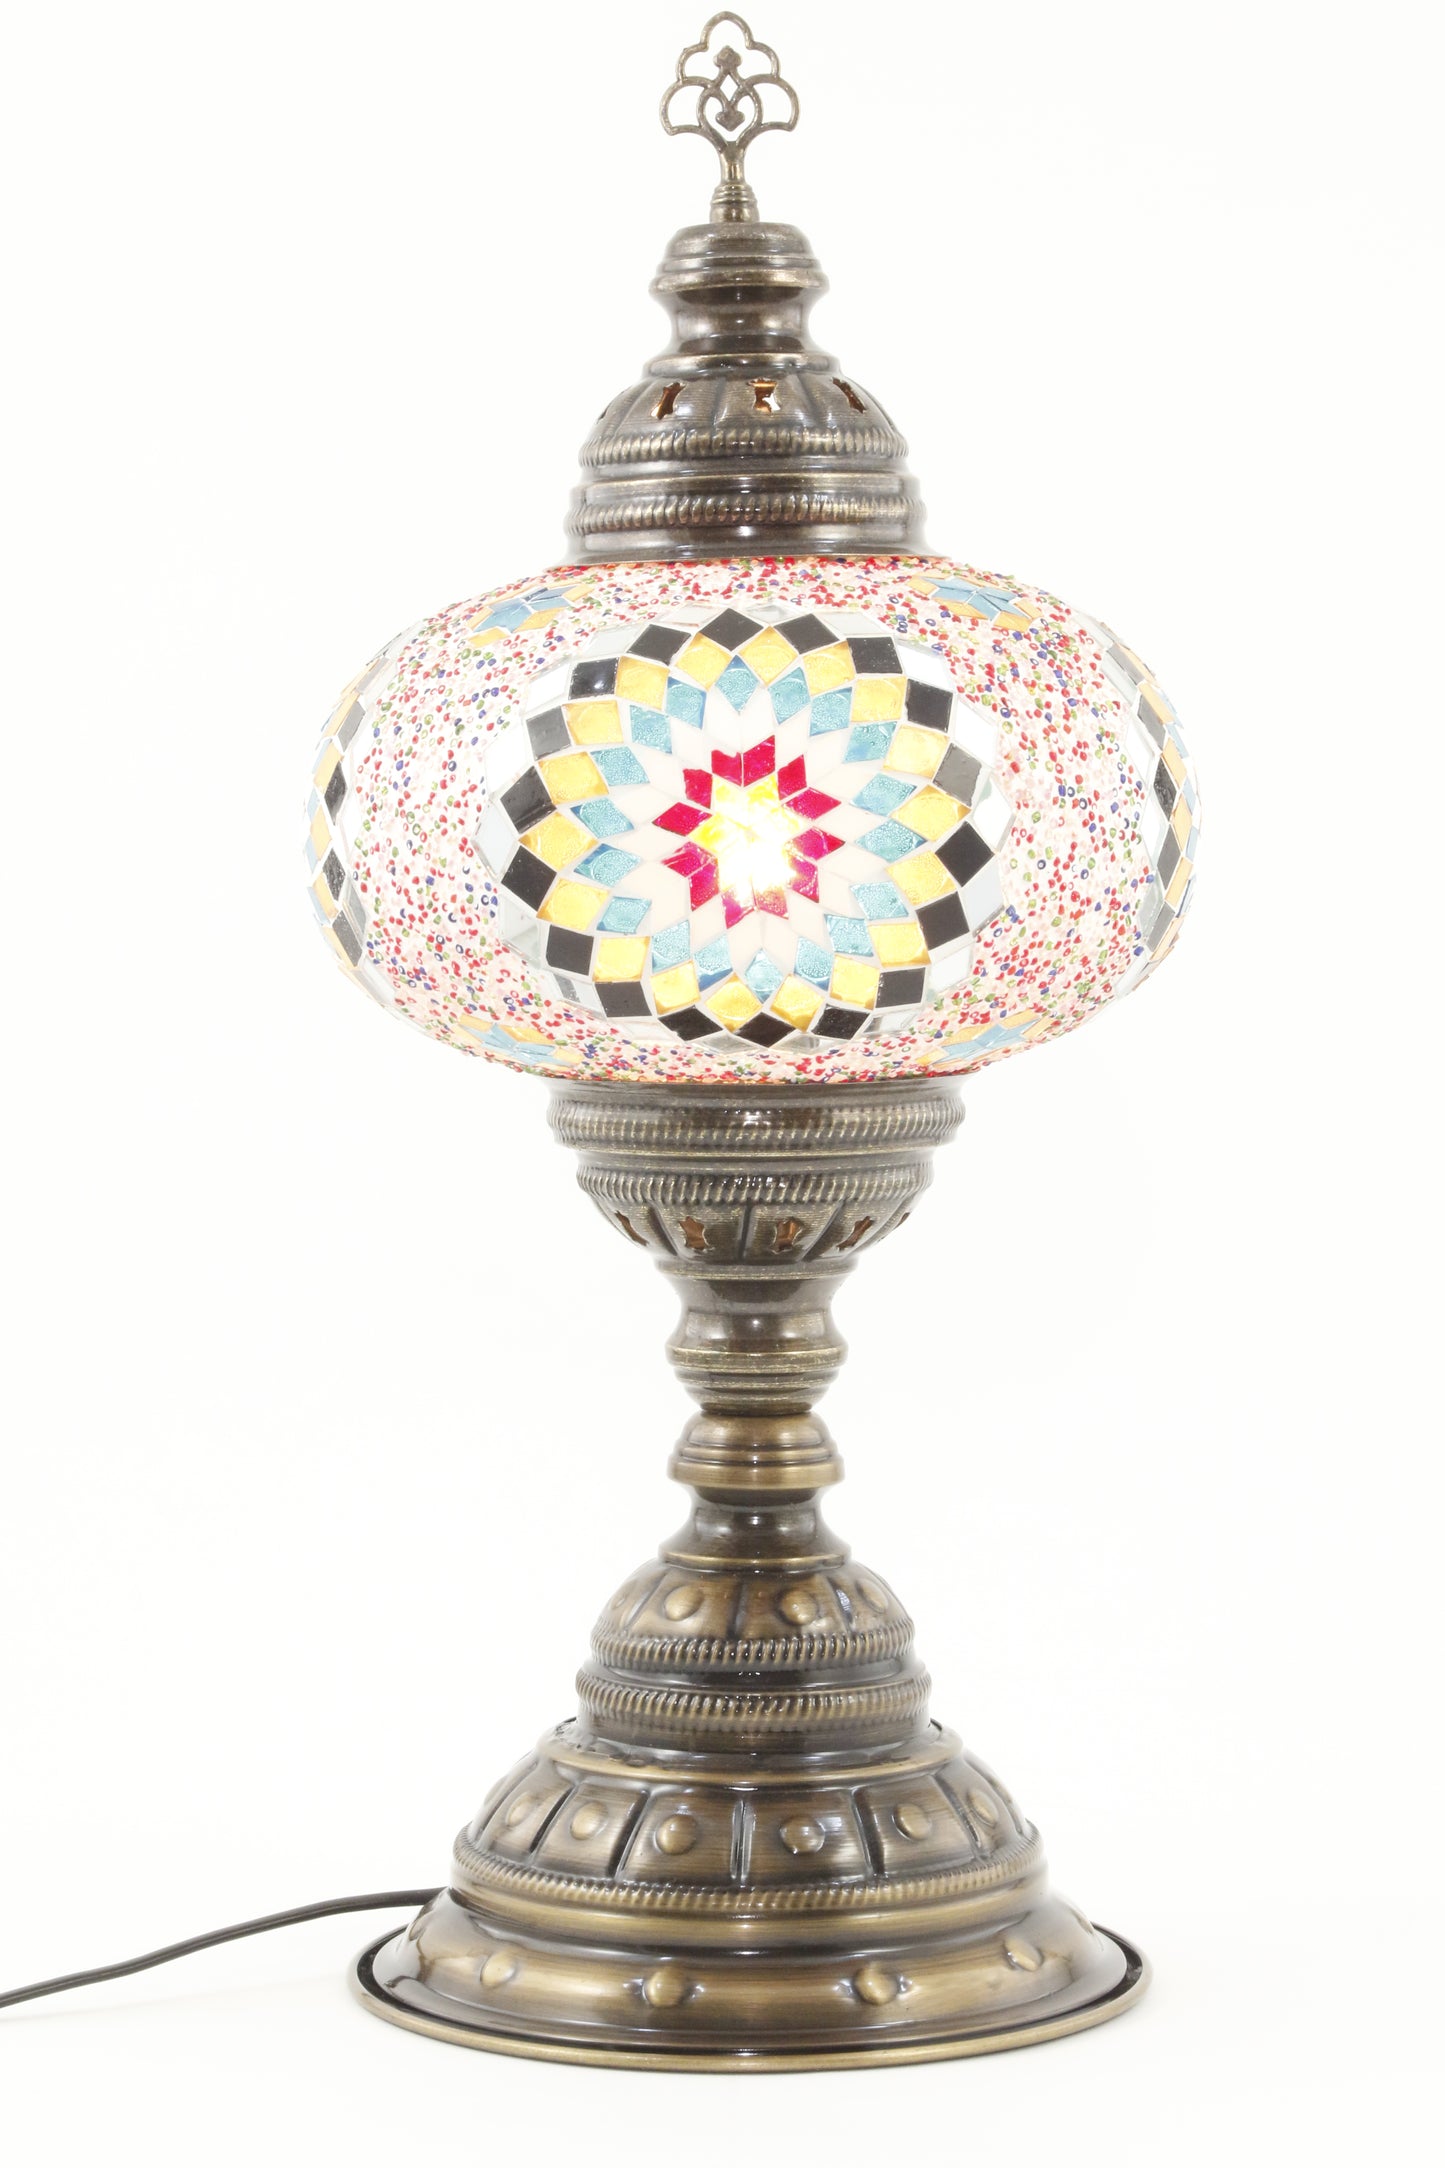 TURKISH MOSAIC TABLE LAMP MB4 RAINBOW 1-TURNED ON